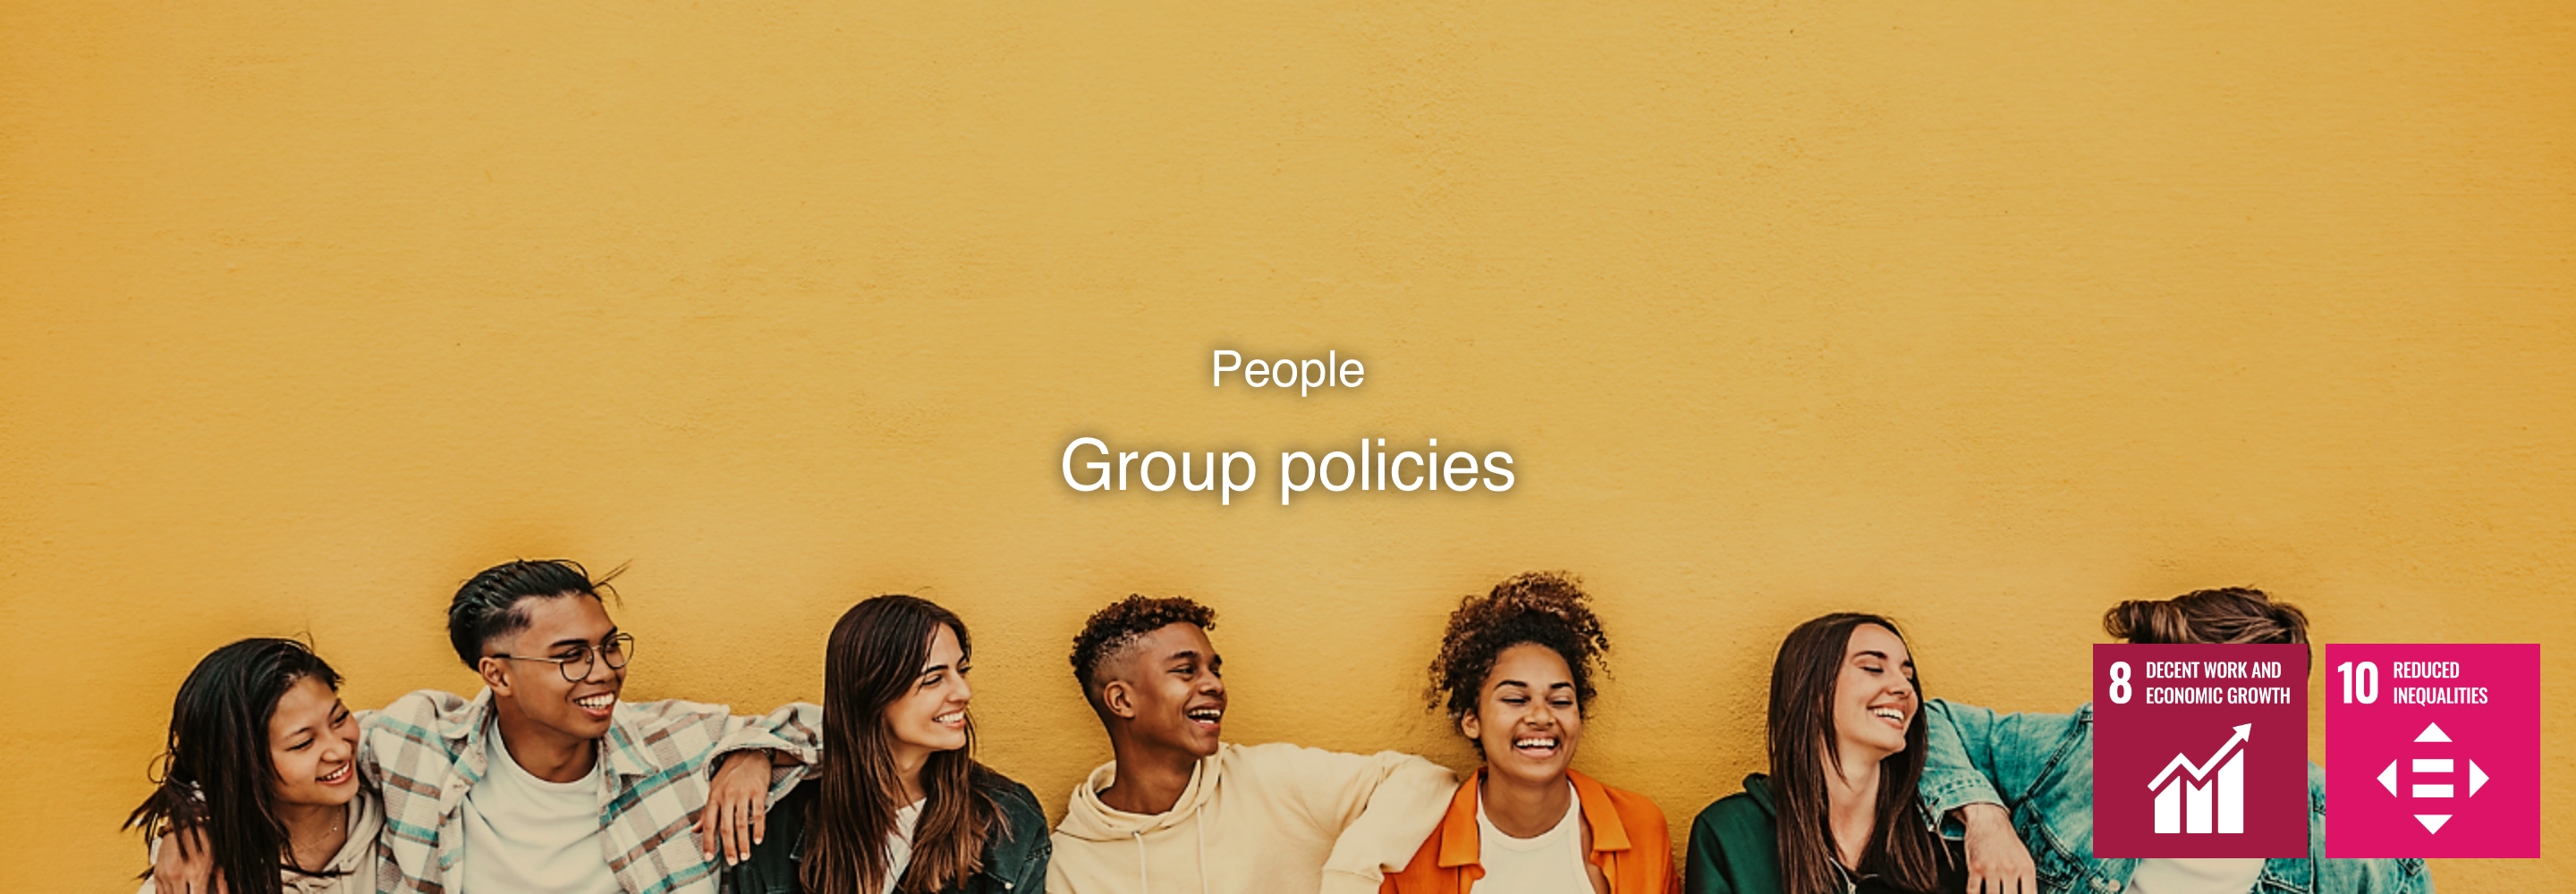 Le persone Le politiche del Gruppo